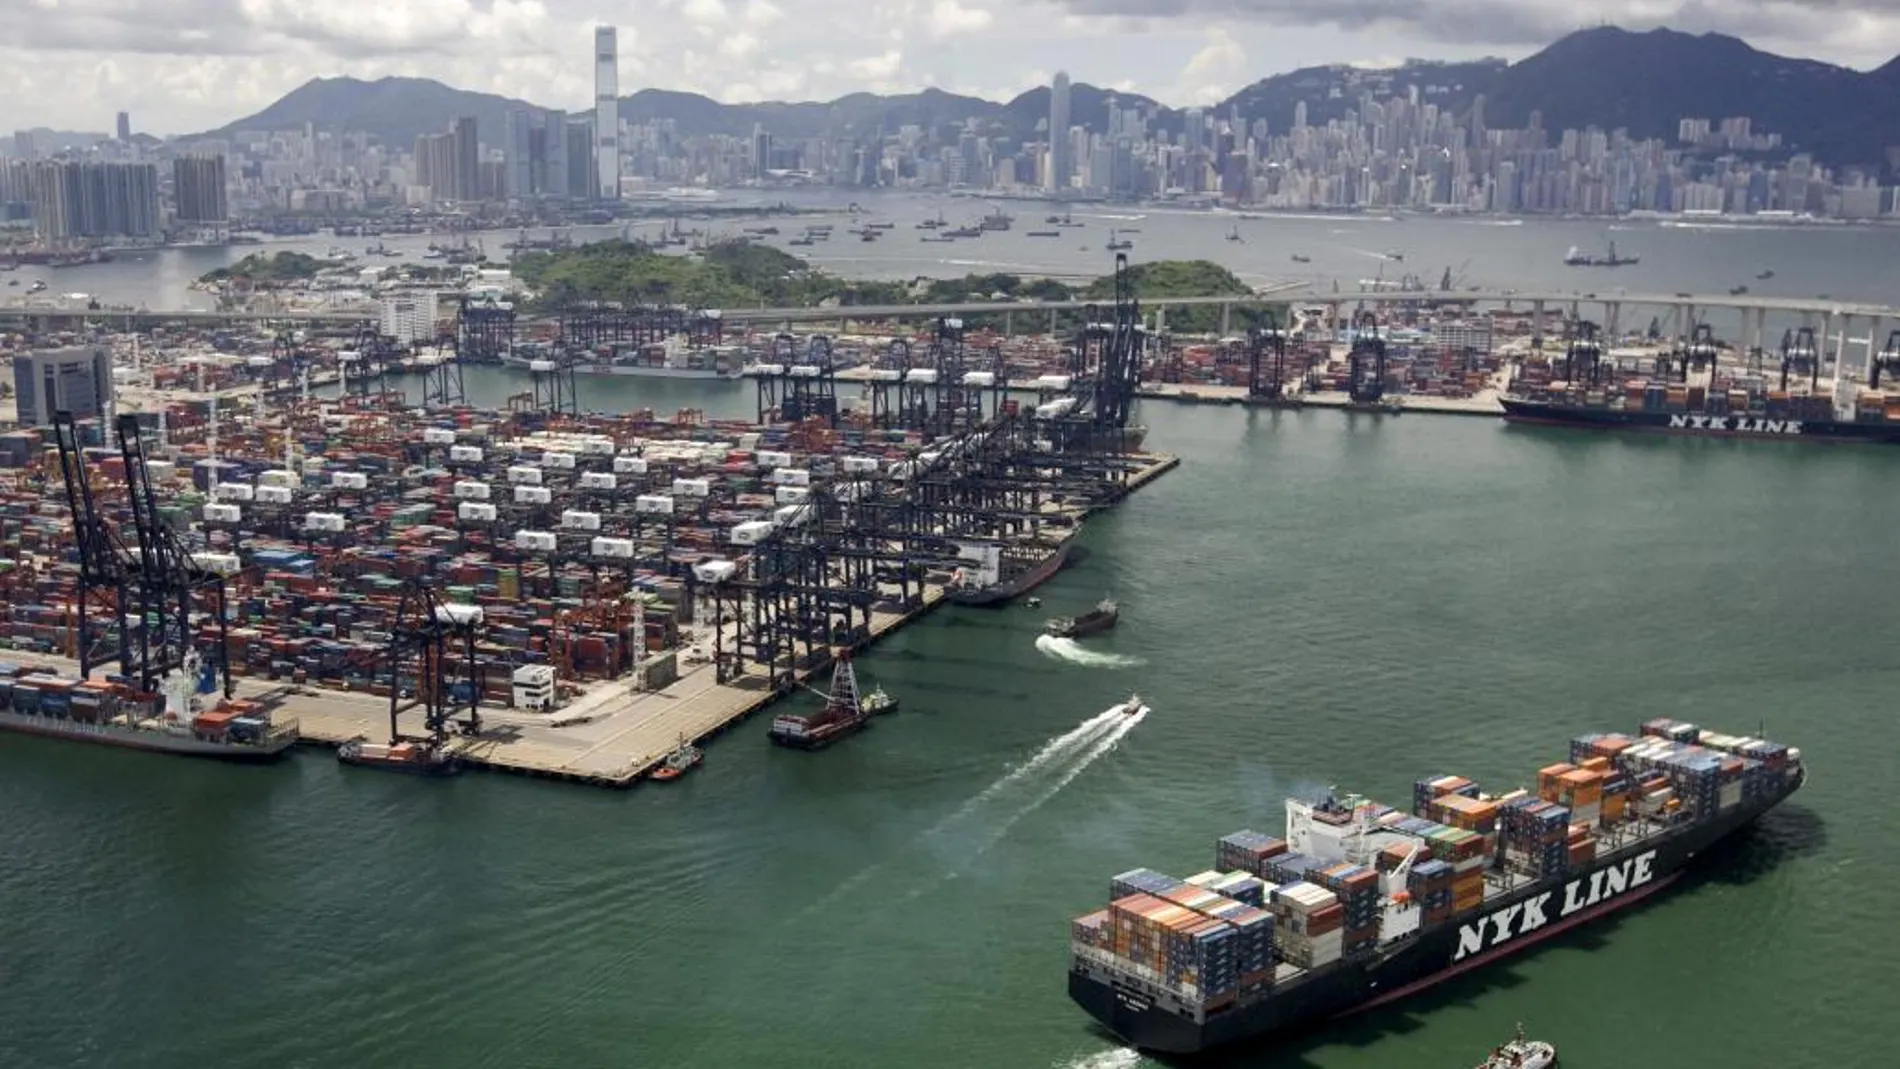 Una vista aérea del puerto de Kwai Chung, uno de los puertos más ocupados del mundo